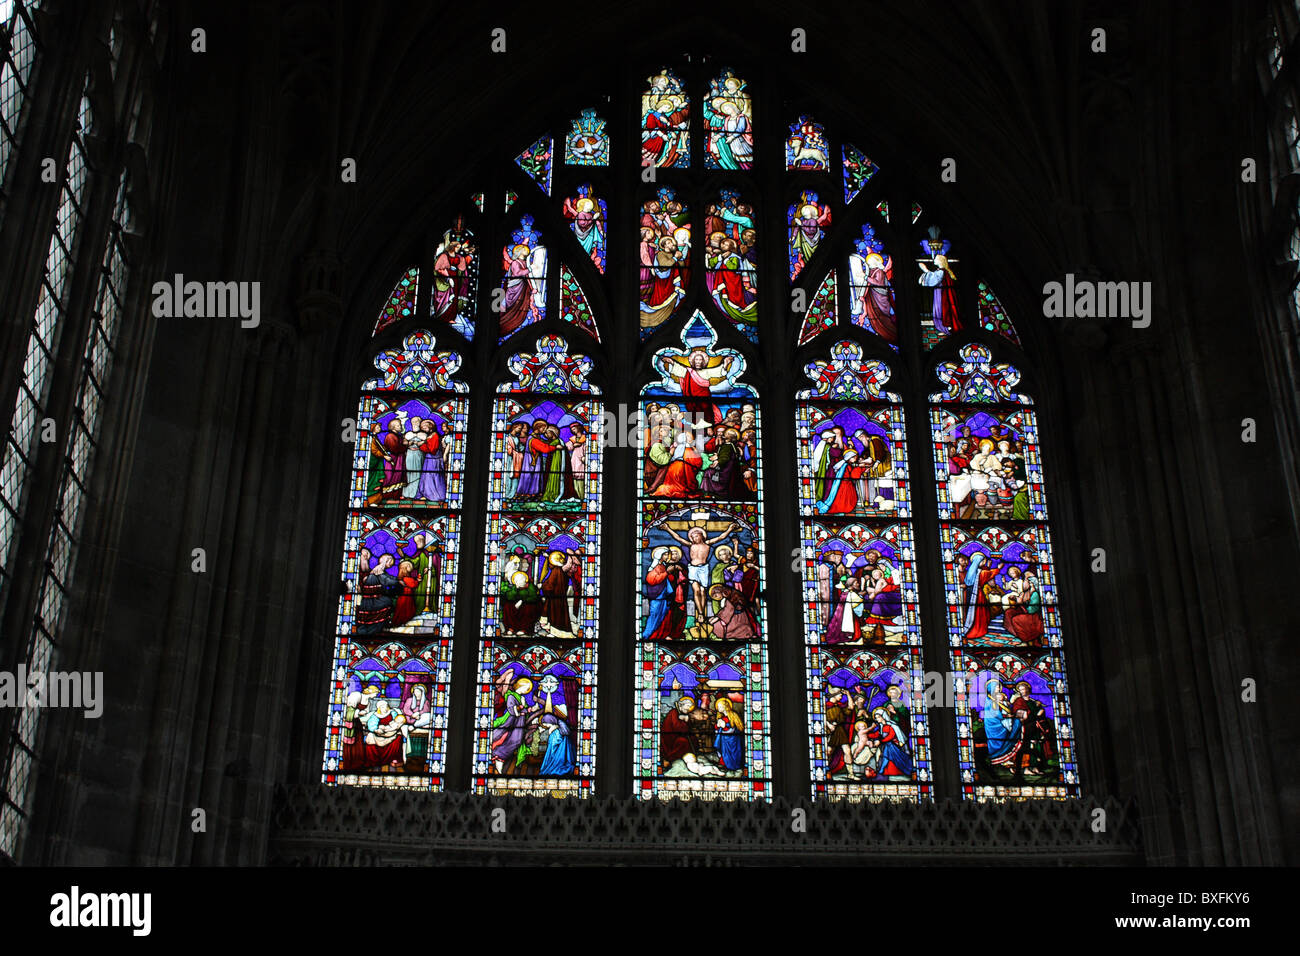 Finestra di vetro colorato all'interno di Christchurch Priory chiesa in Dorset Foto Stock